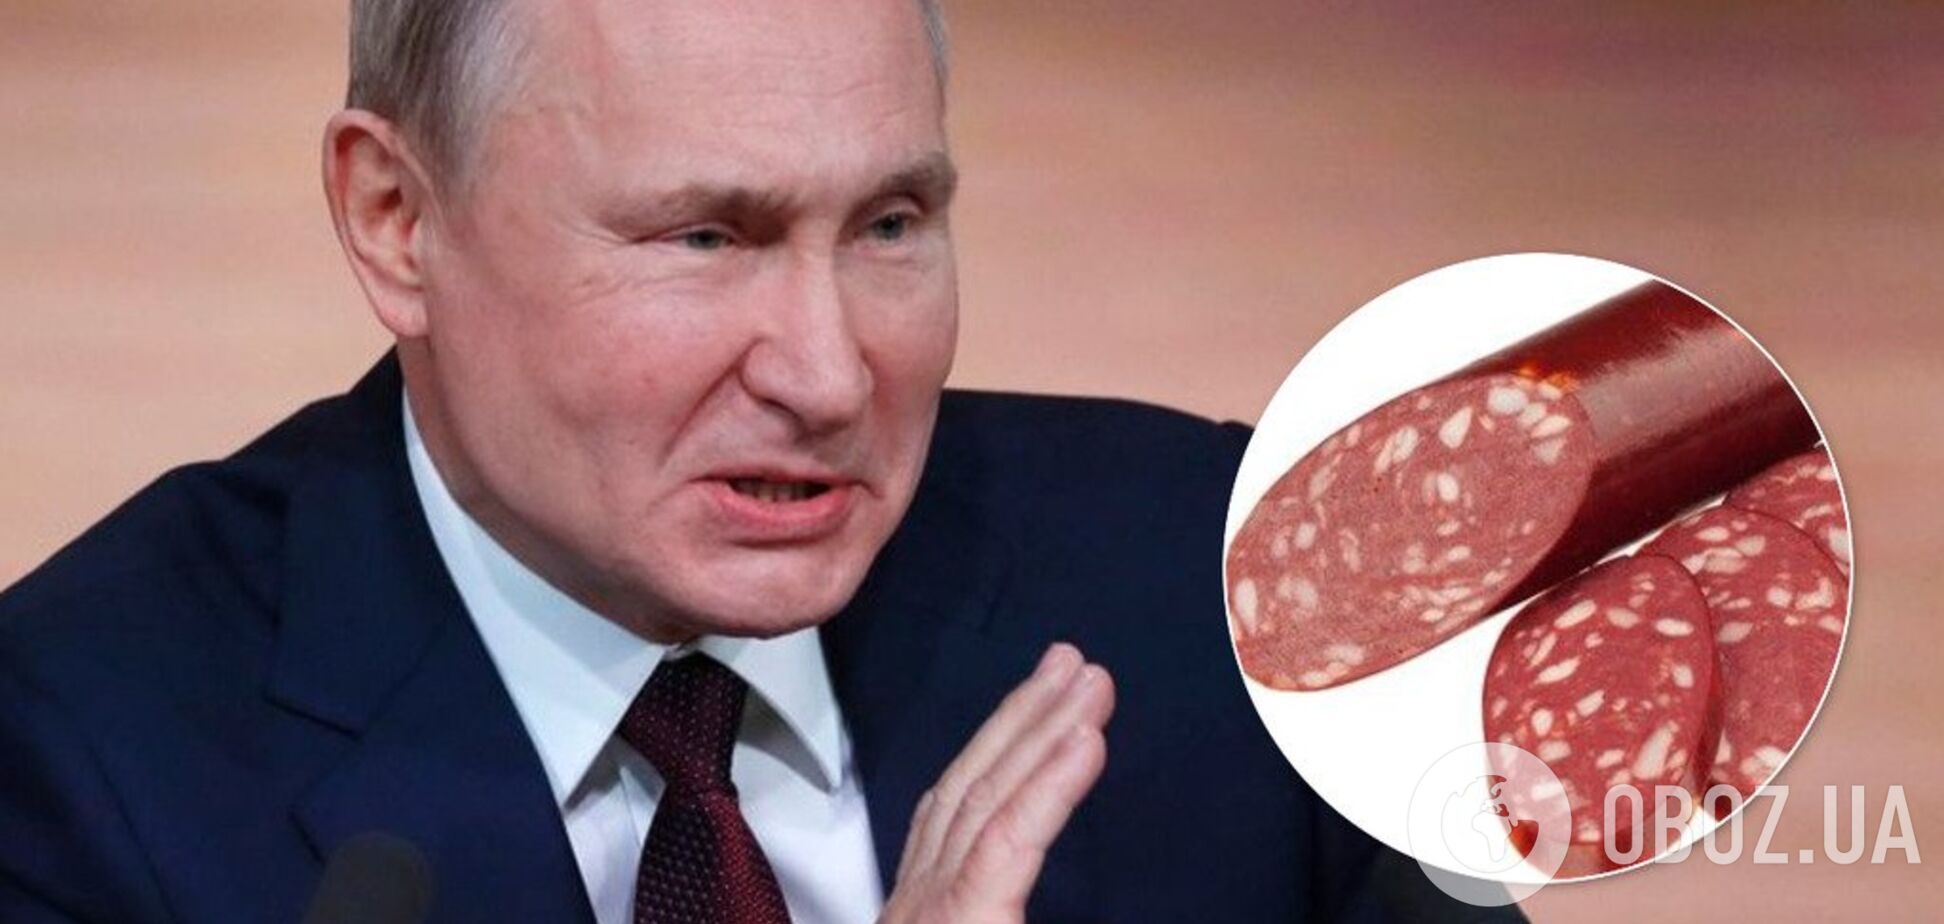 'Поверни ковбасу': Путін публічно потрапив у конфуз із чиновником. Відео